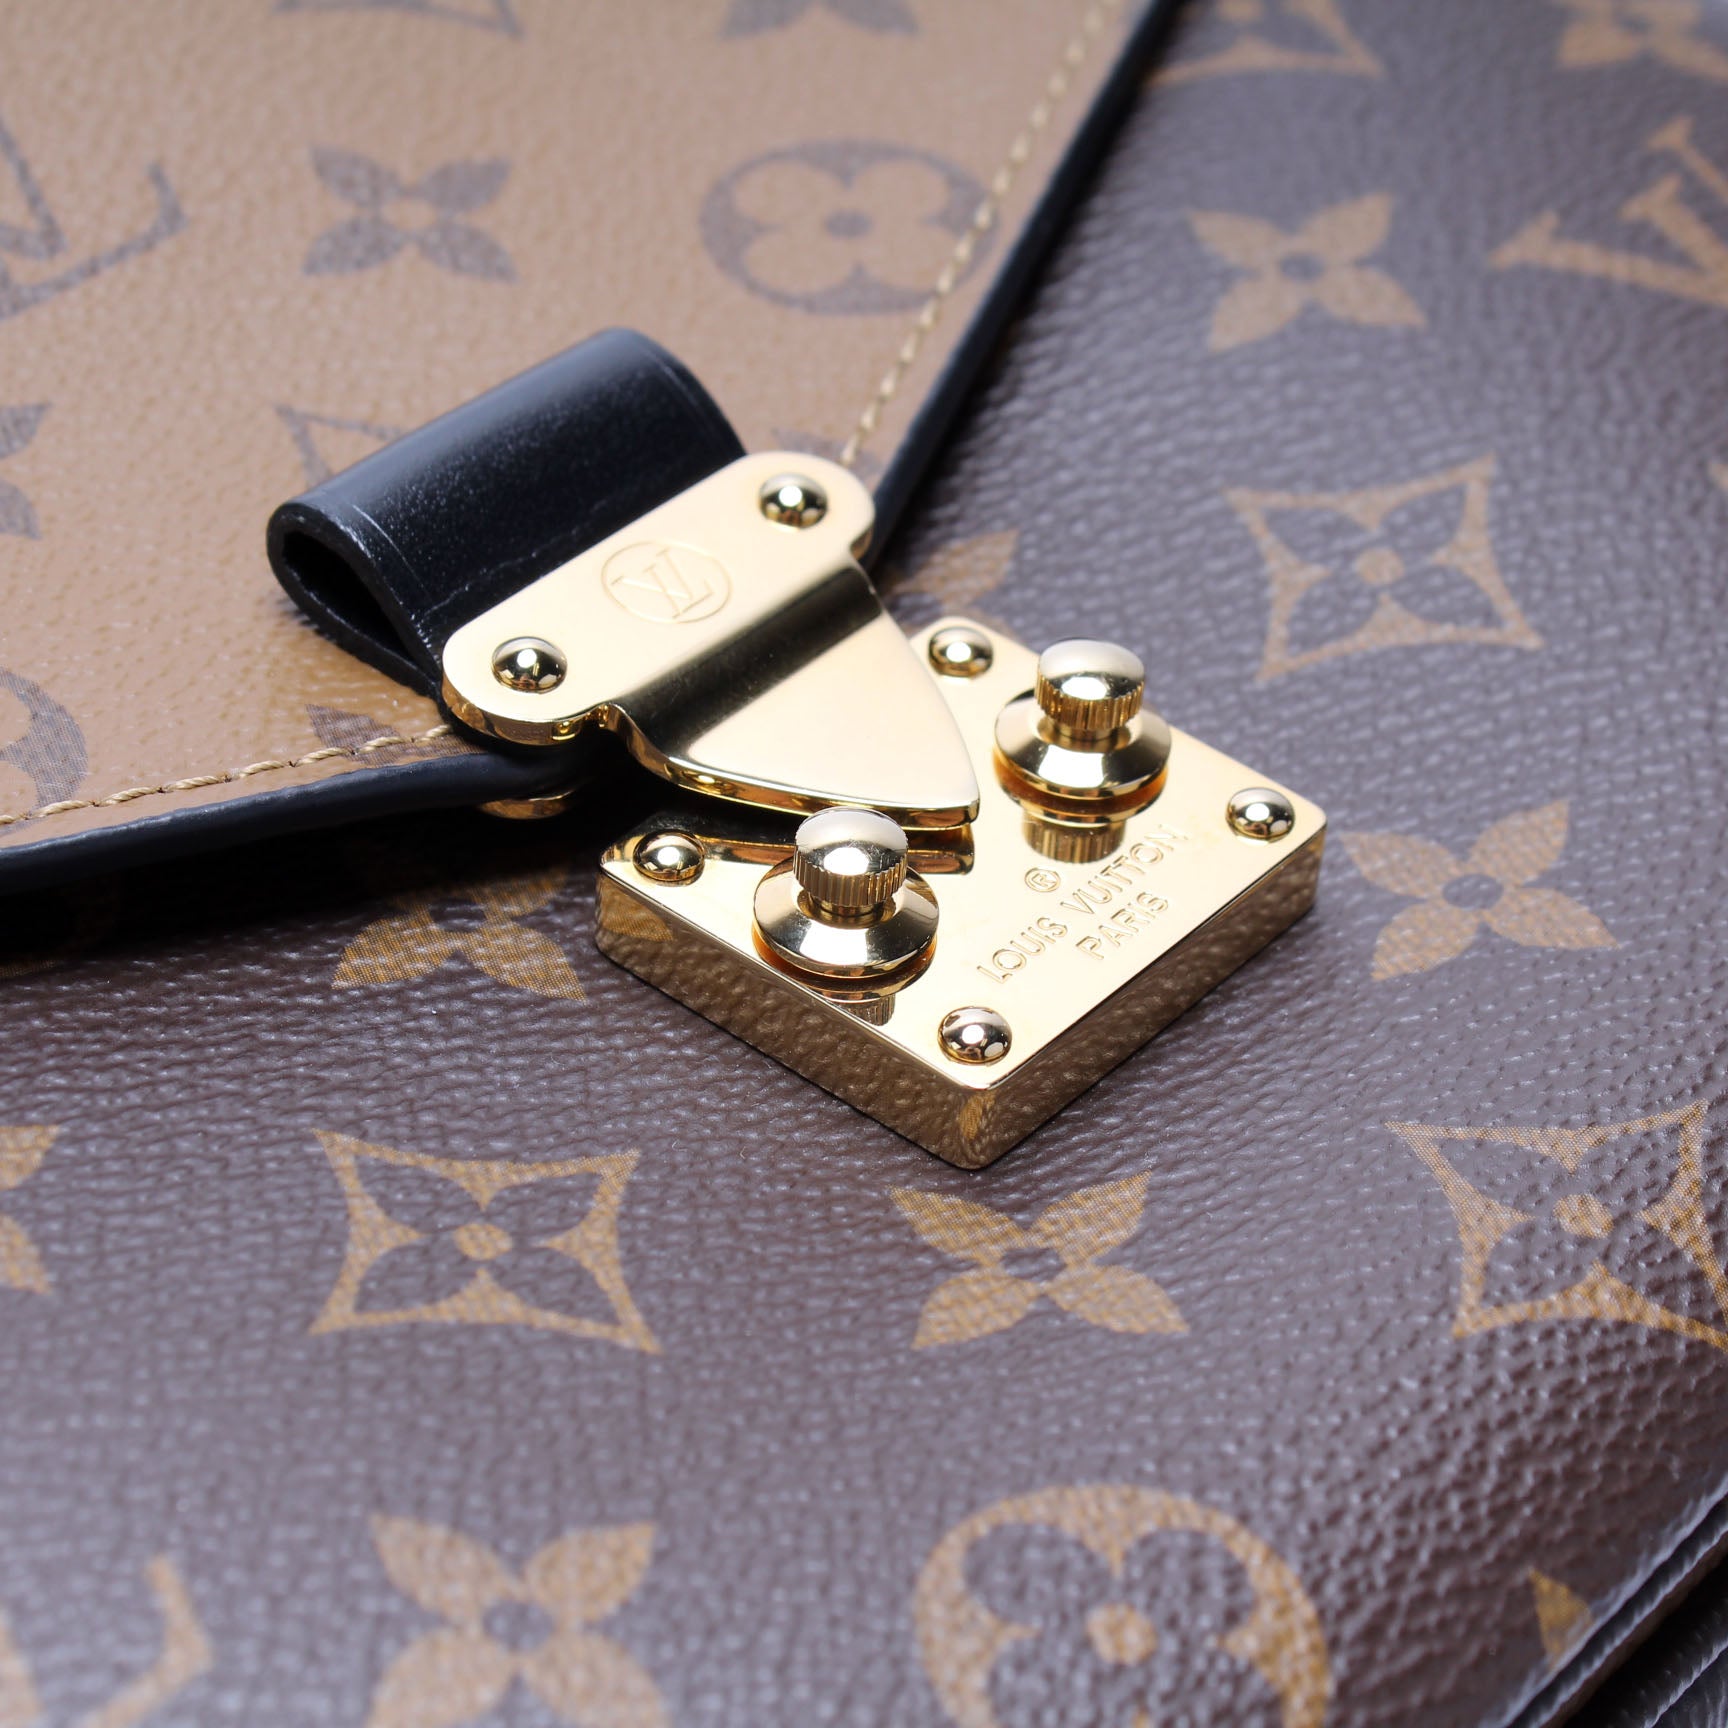 Louis Vuitton Pochette Metis Reverse - Klueles shop online